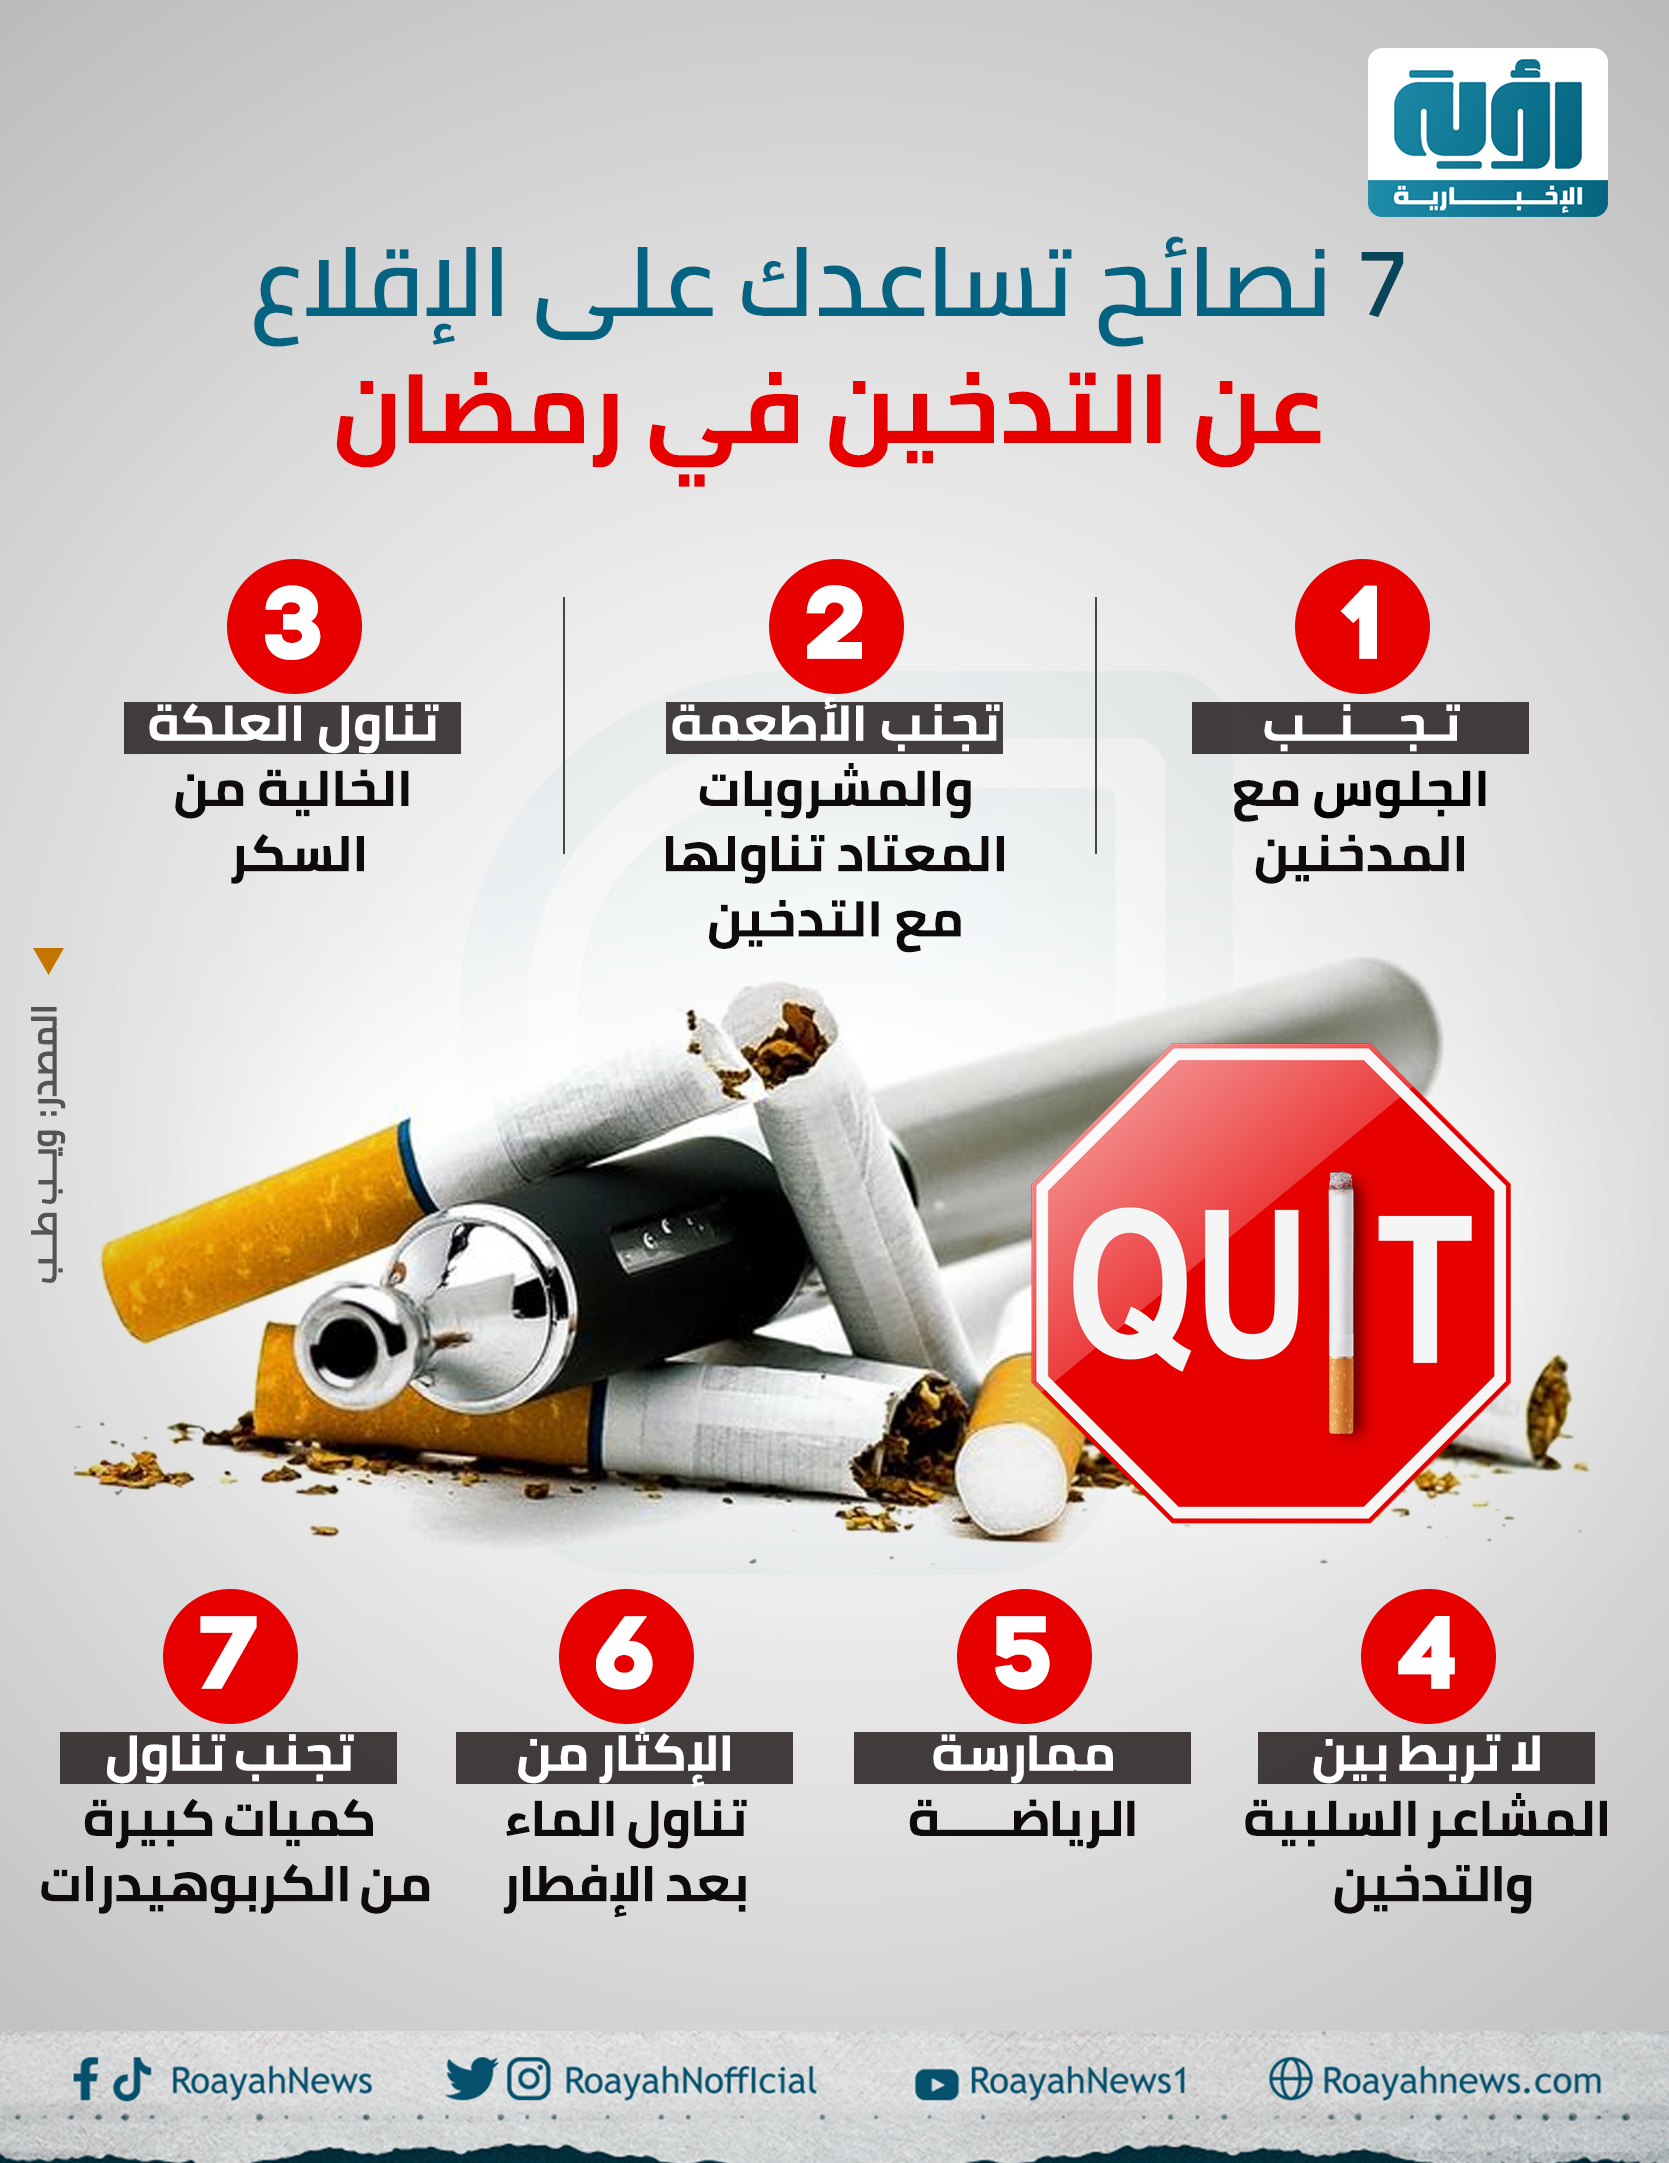 7 نصائح تساعدك على الإقلاع عن التدخين في رمضان